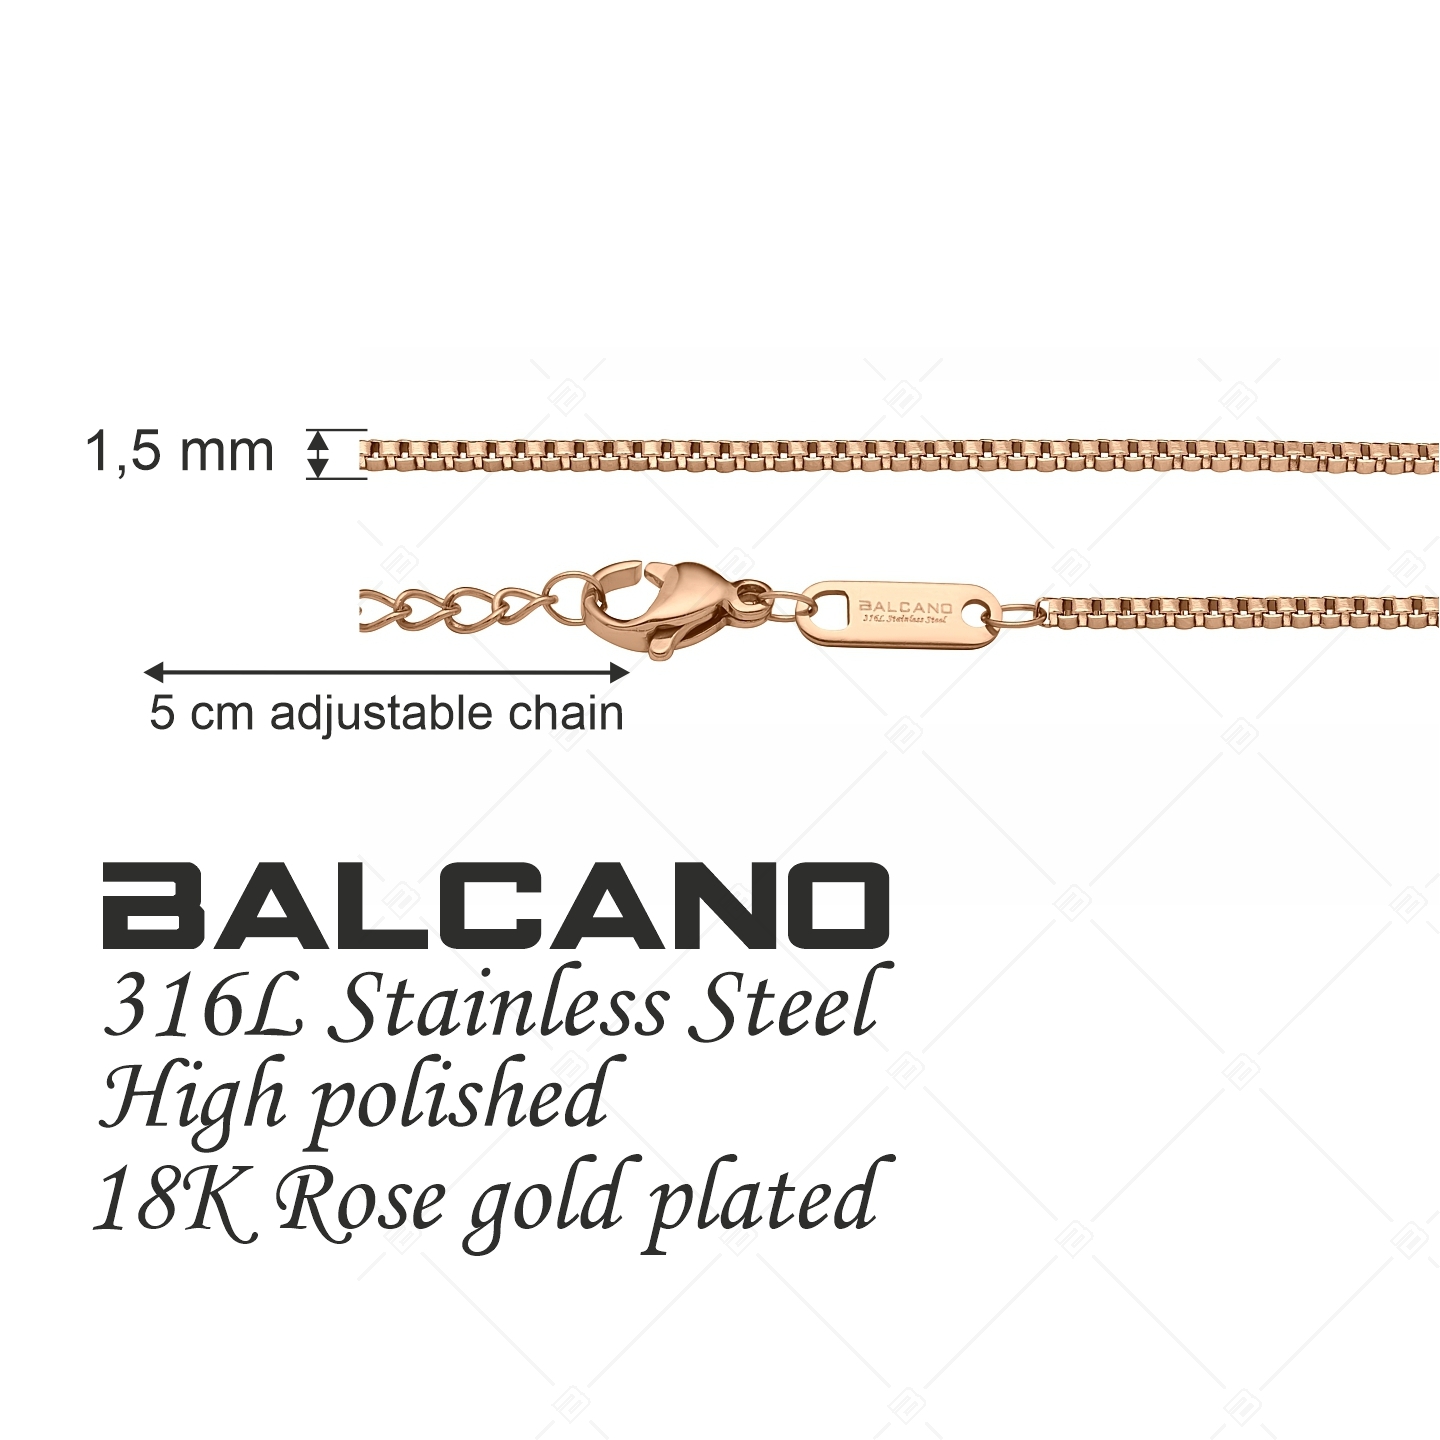 BALCANO - Venetian / Edelstahl Venezianer Kette mit 18K Roségold Beschichtung - 1,5 mm (341292BC96)